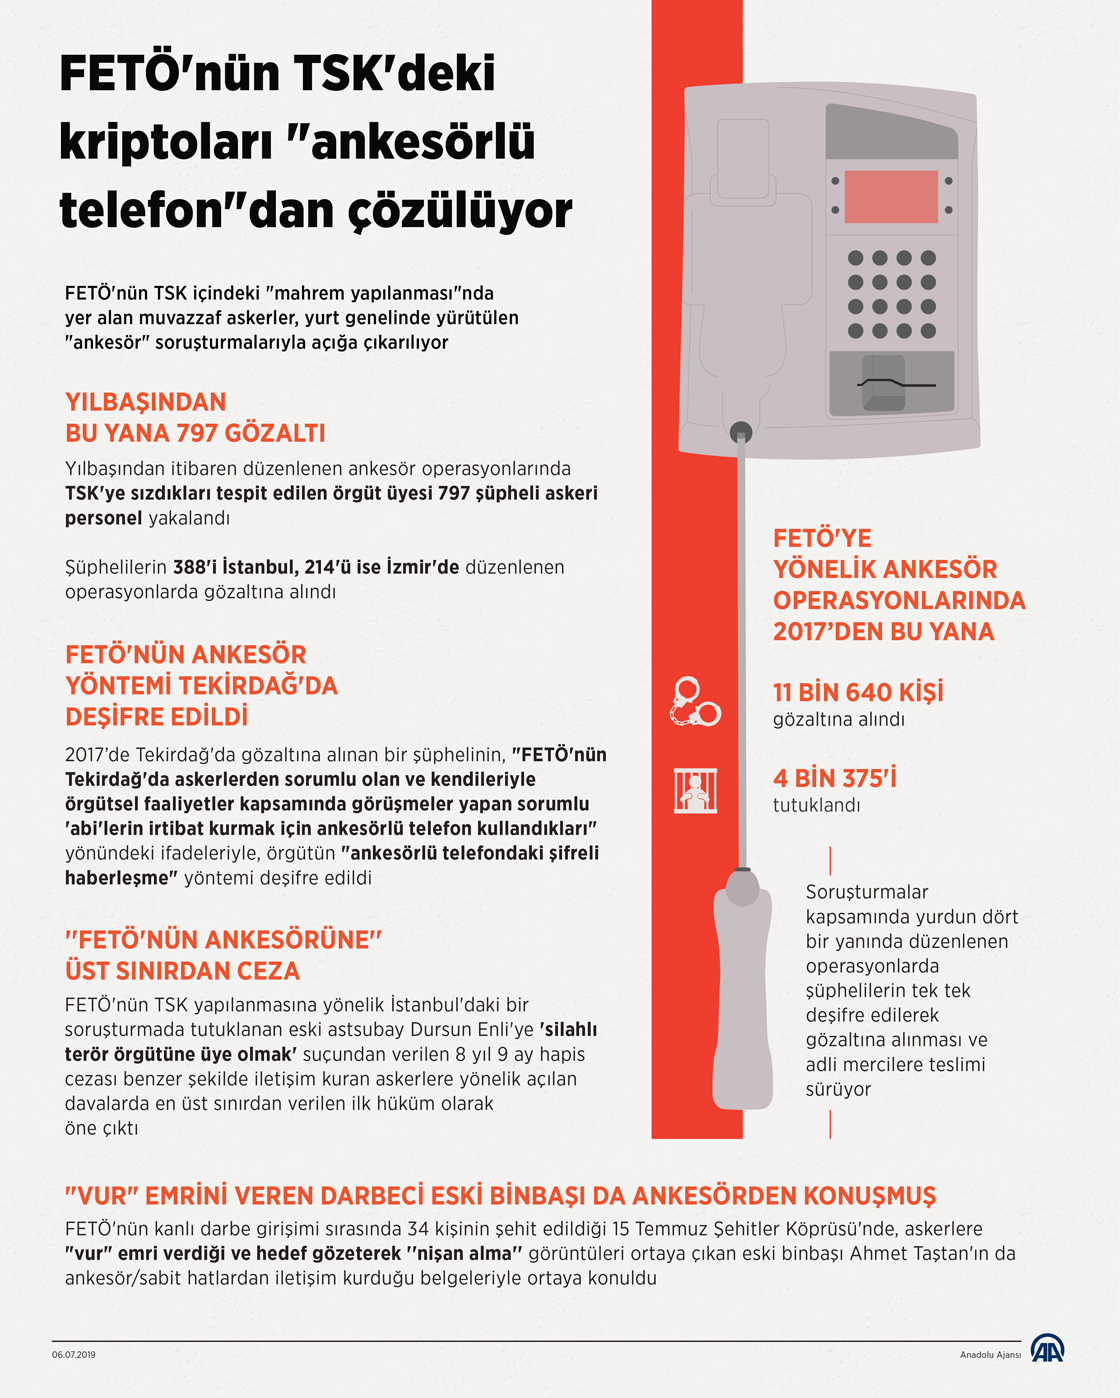 FETÖ'nün TSK'deki kriptoları "ankesörlü telefon"dan çözülüyor